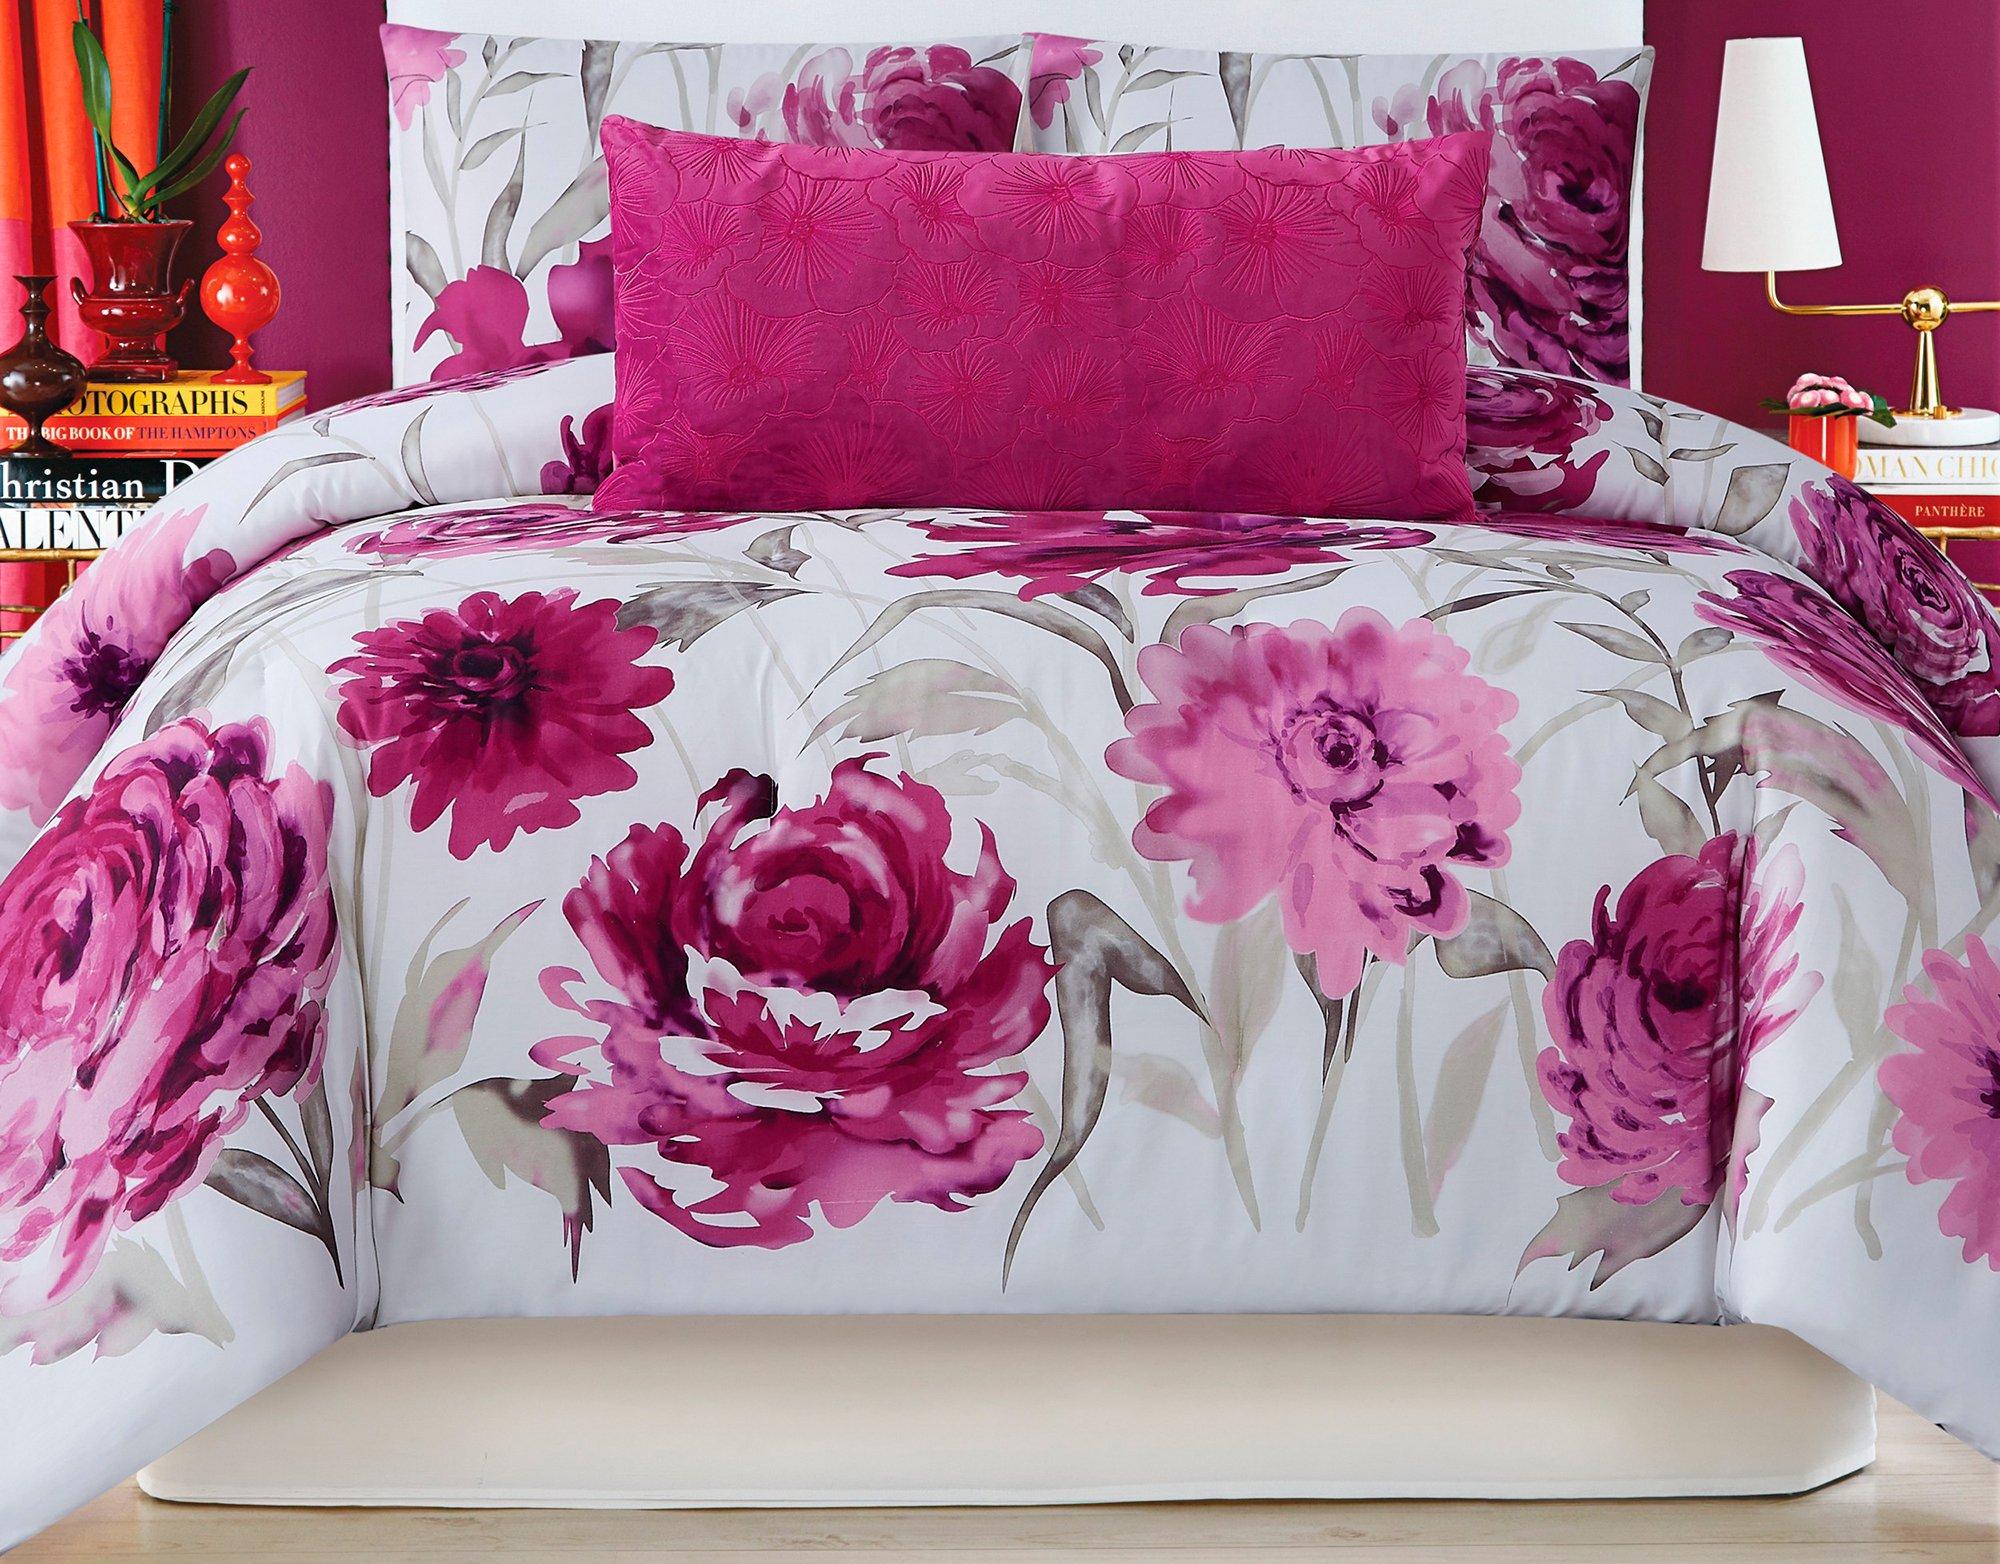 Remy Floral Comforter Set